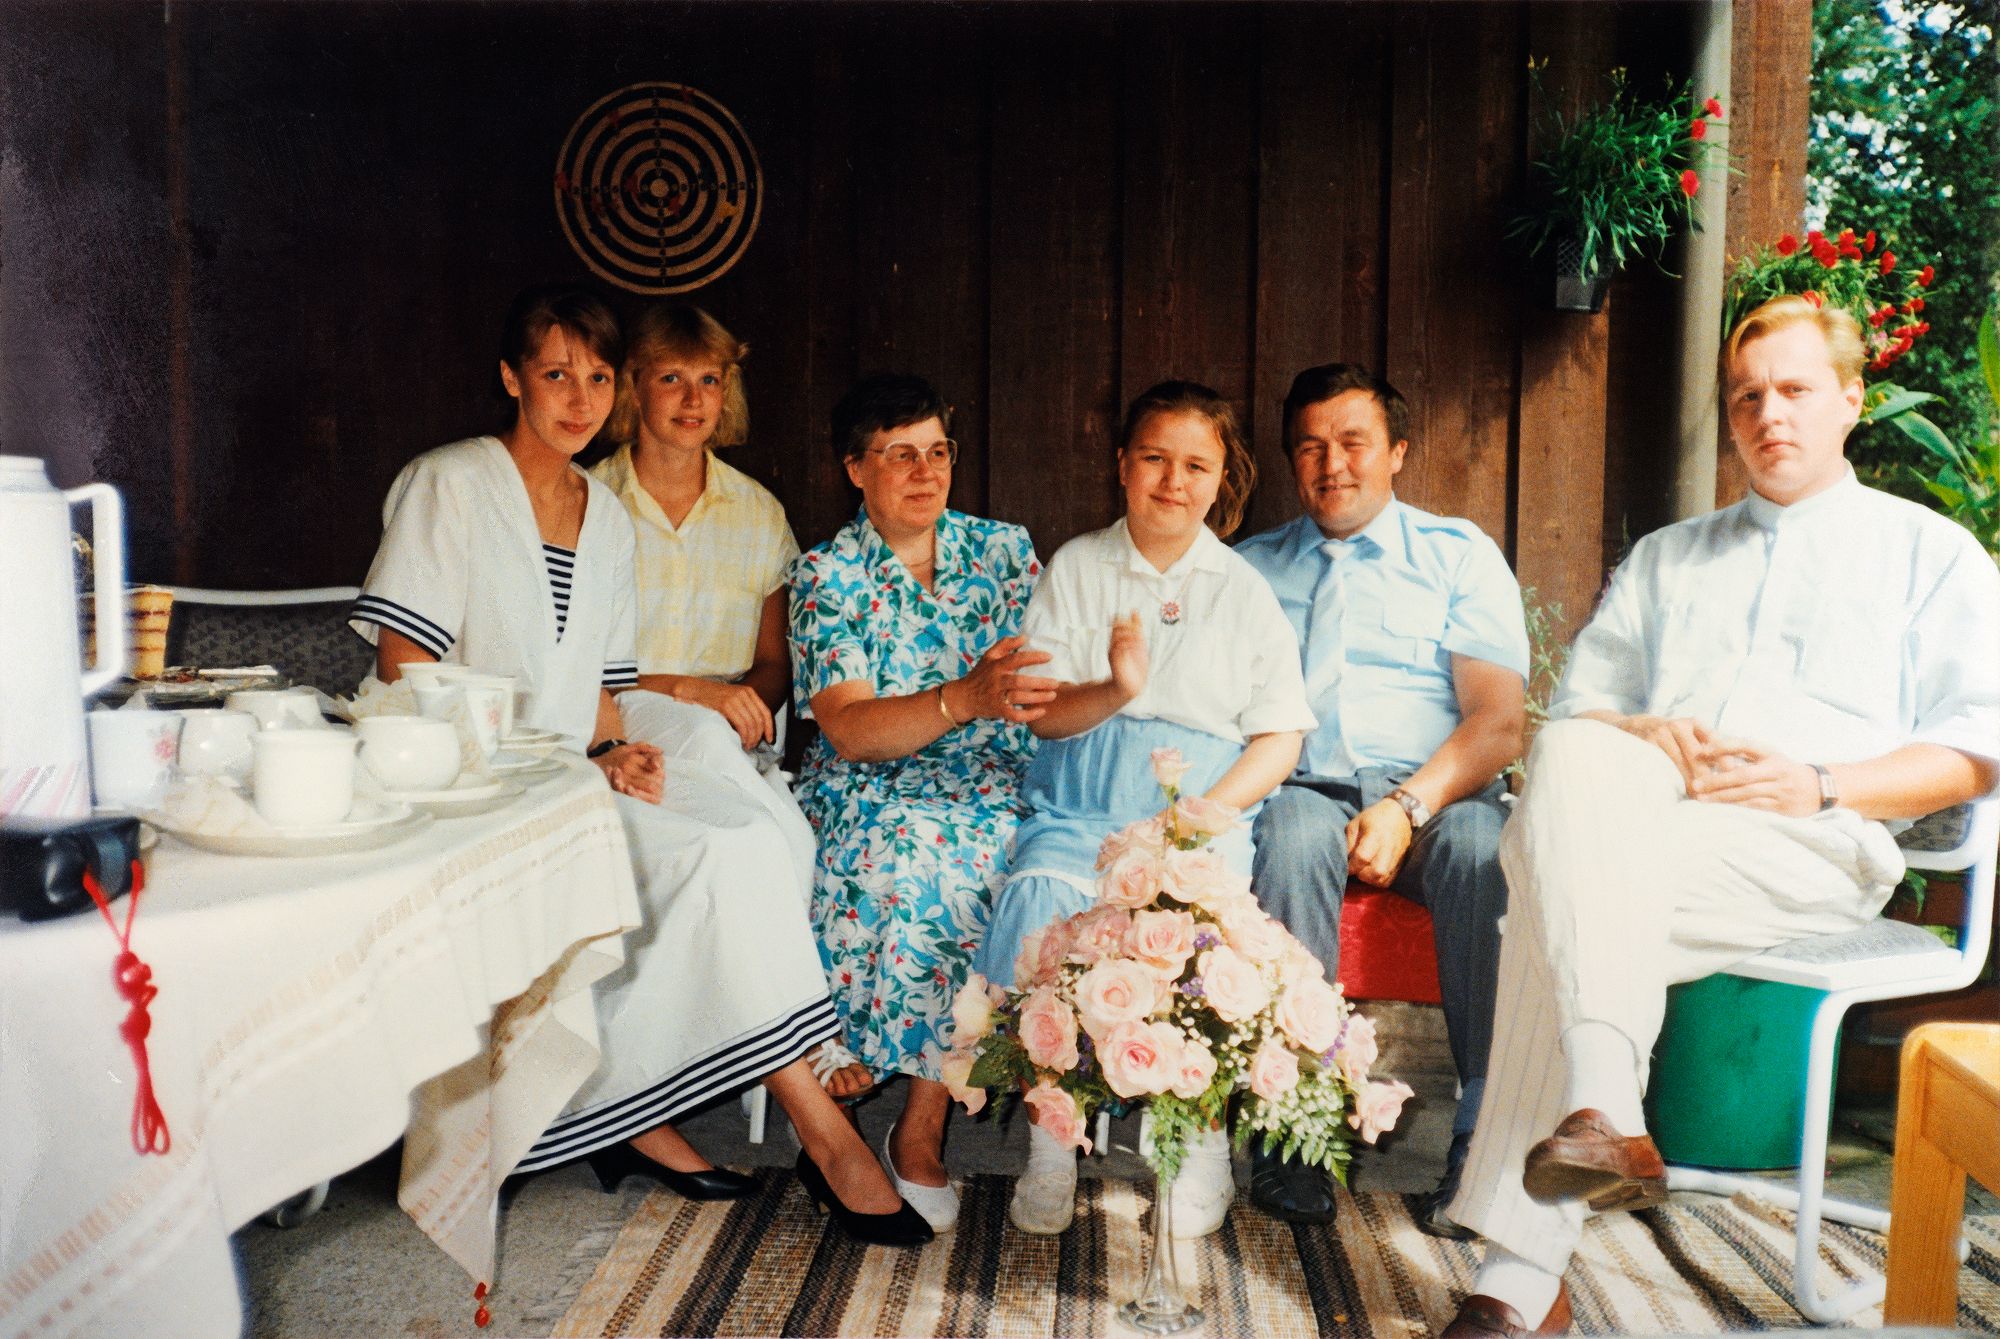 Perhekuvassa vuonna 1988 isän 50-vuotispäiviä viettivät vanhemmat Helena ja Mikko Pernu lapsineen. Erja Gustafsson kuvan vasemmalla laidalla.  © Gustafssonien kotialbumi